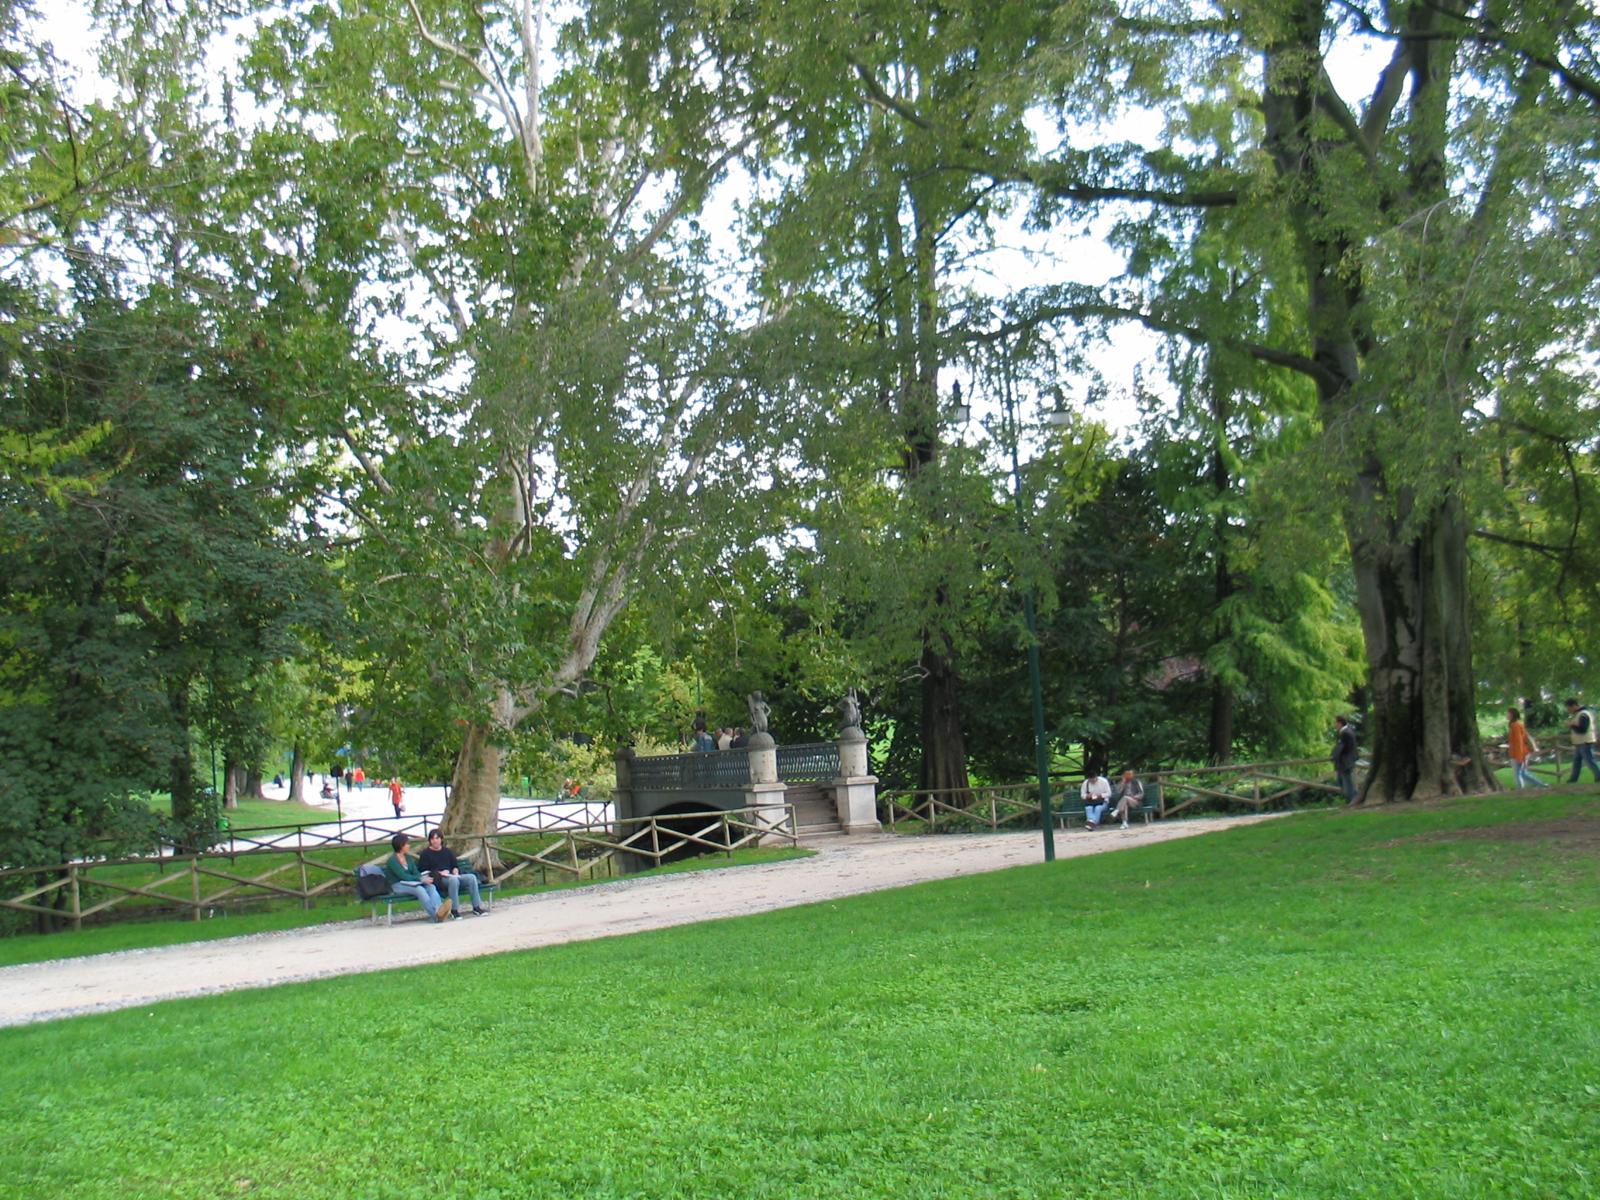 Pretty park space